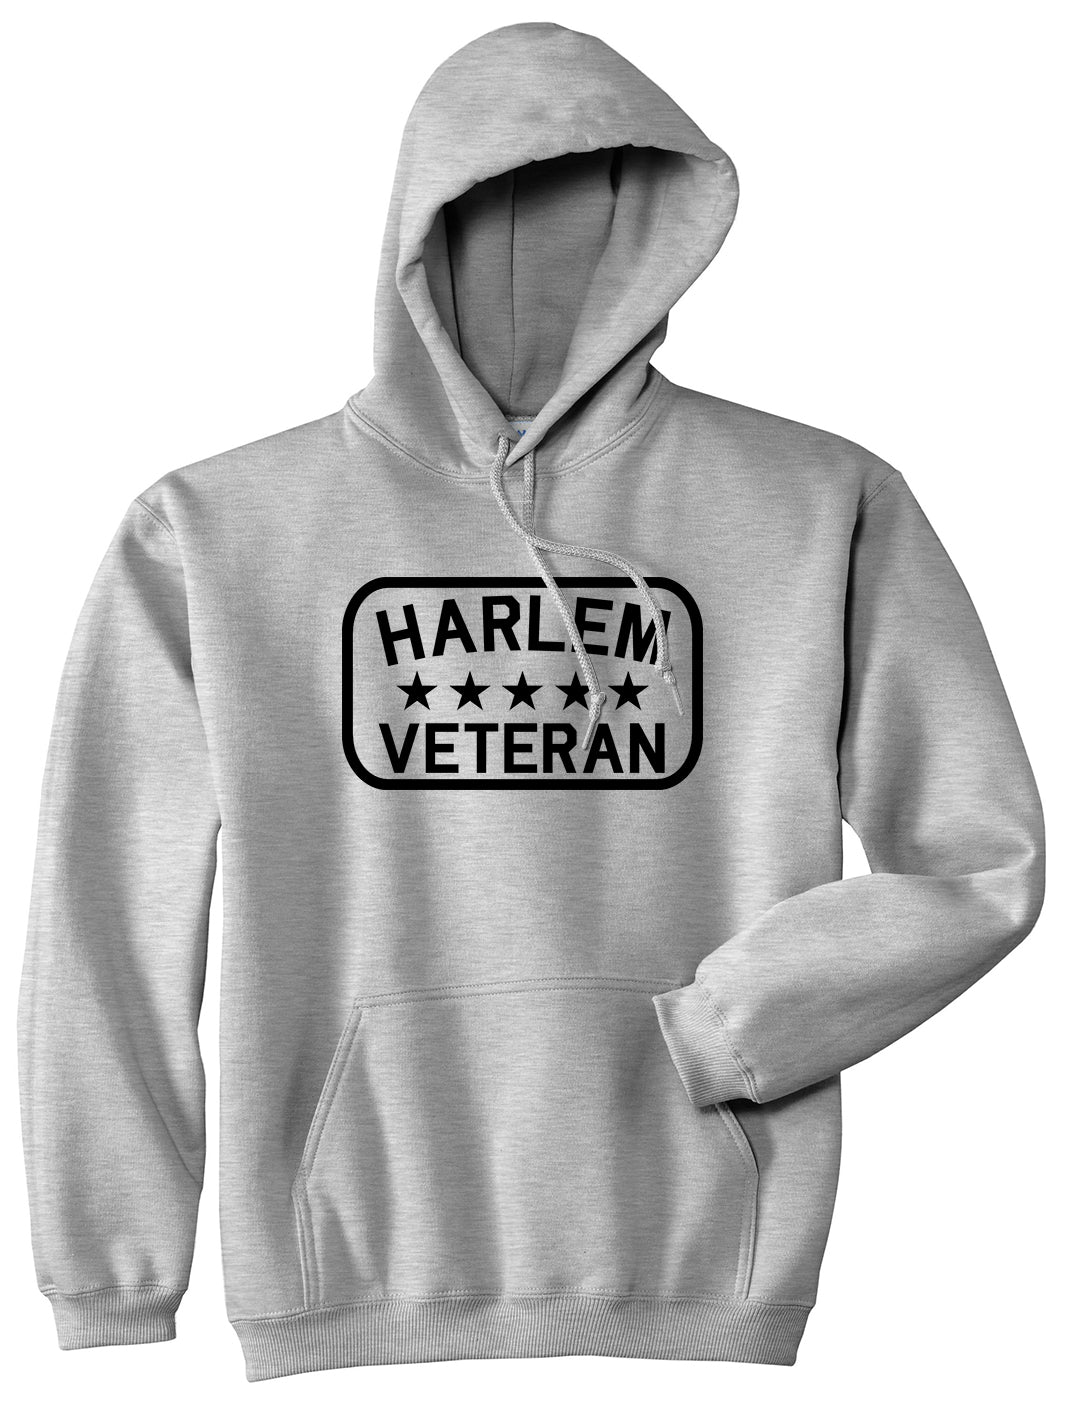 Harlem Veteran Mens Pullover Hoodie Grey